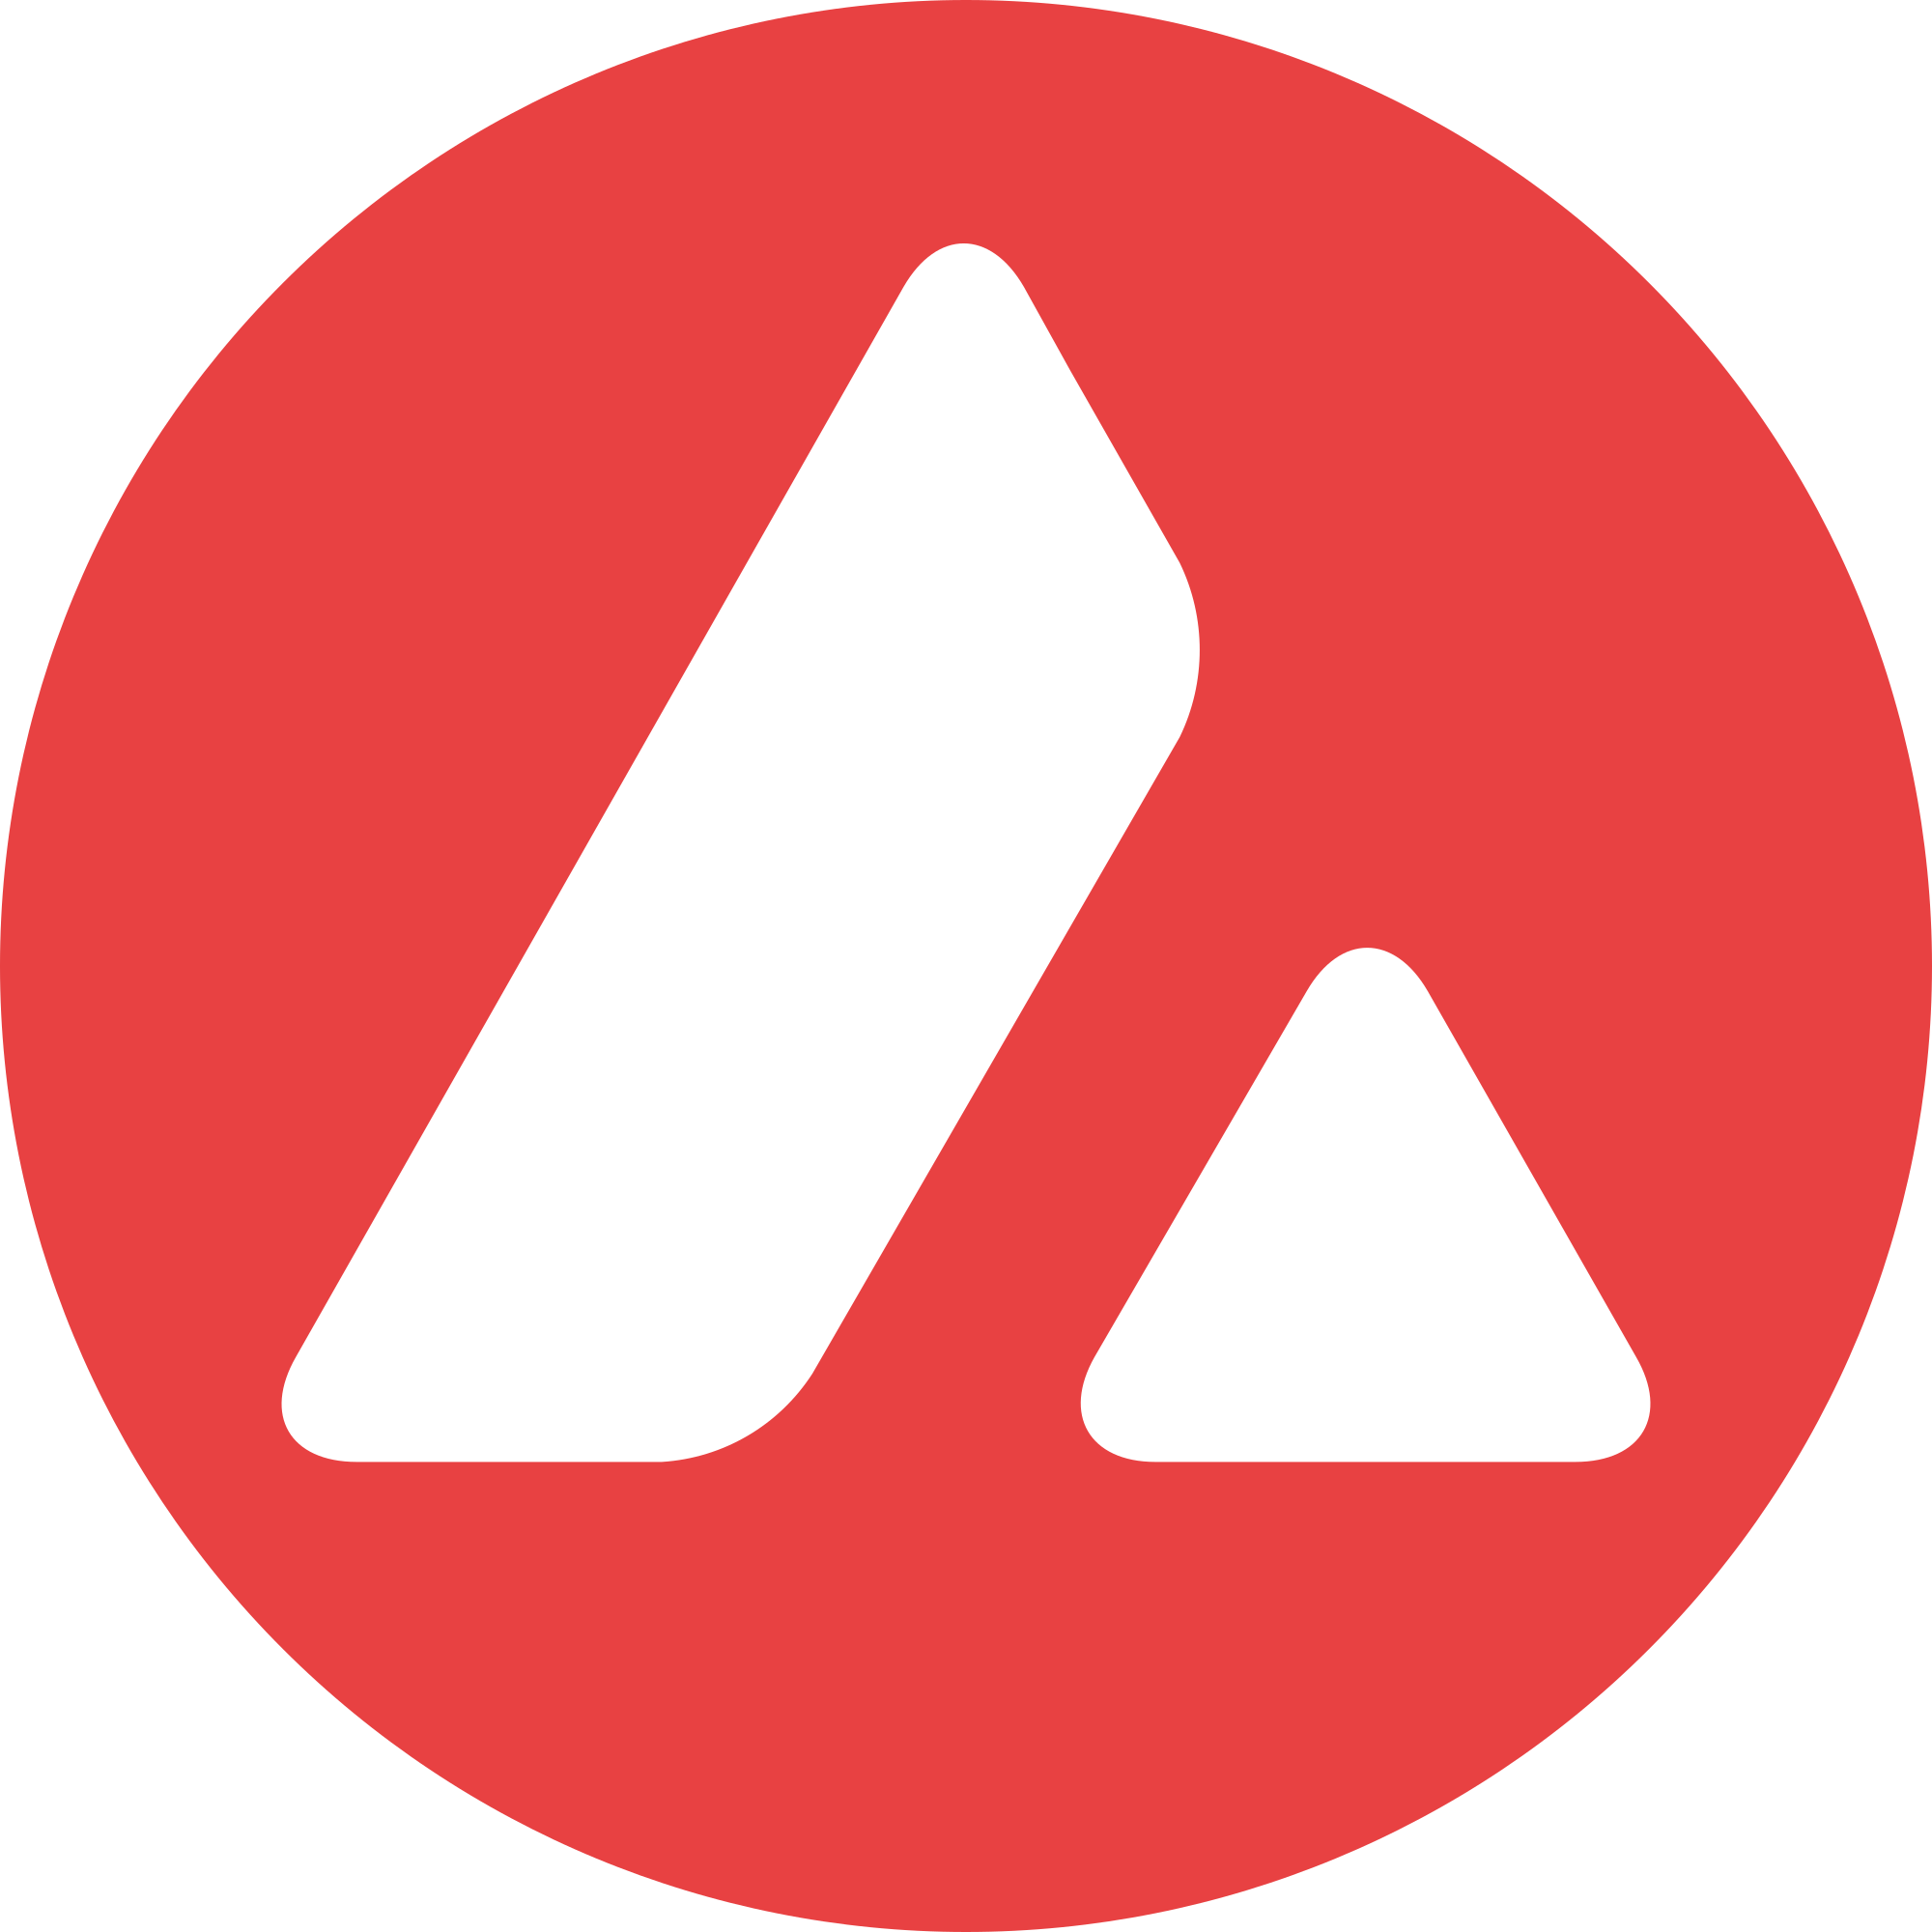 AVAX logo